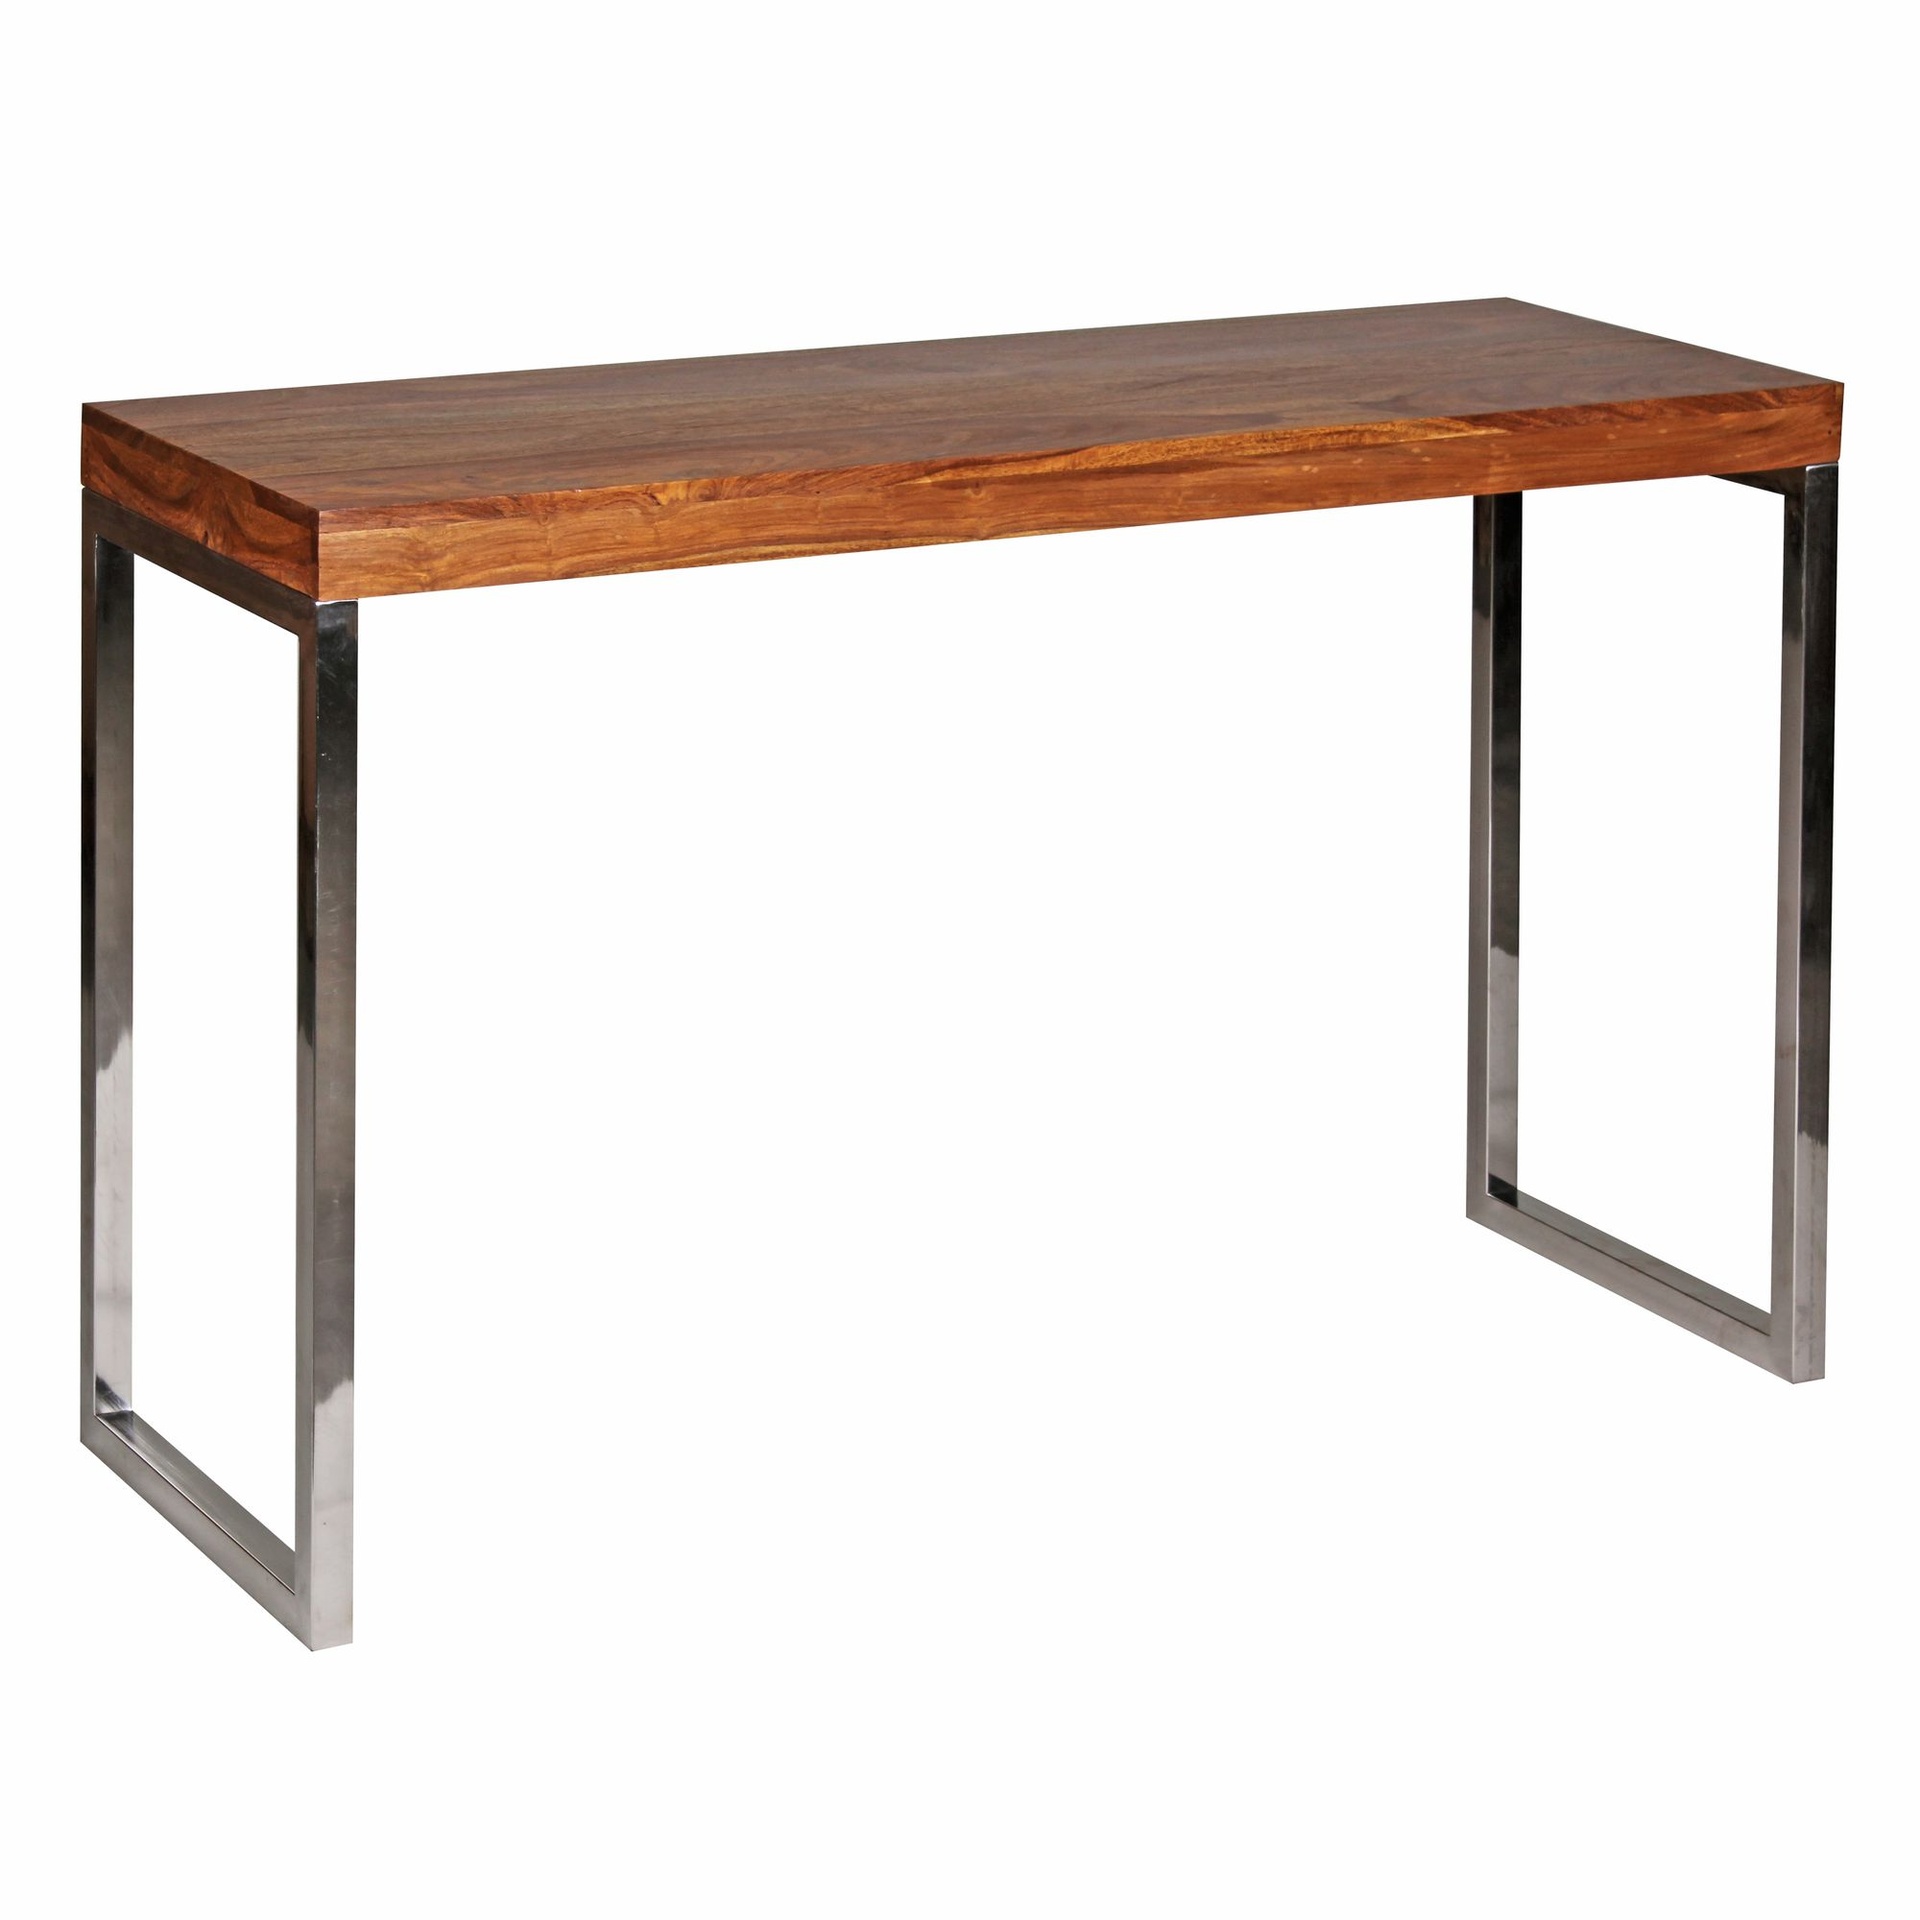 [A09575] Table console GUNA, console en bois massif de Sesham avec pieds en métal